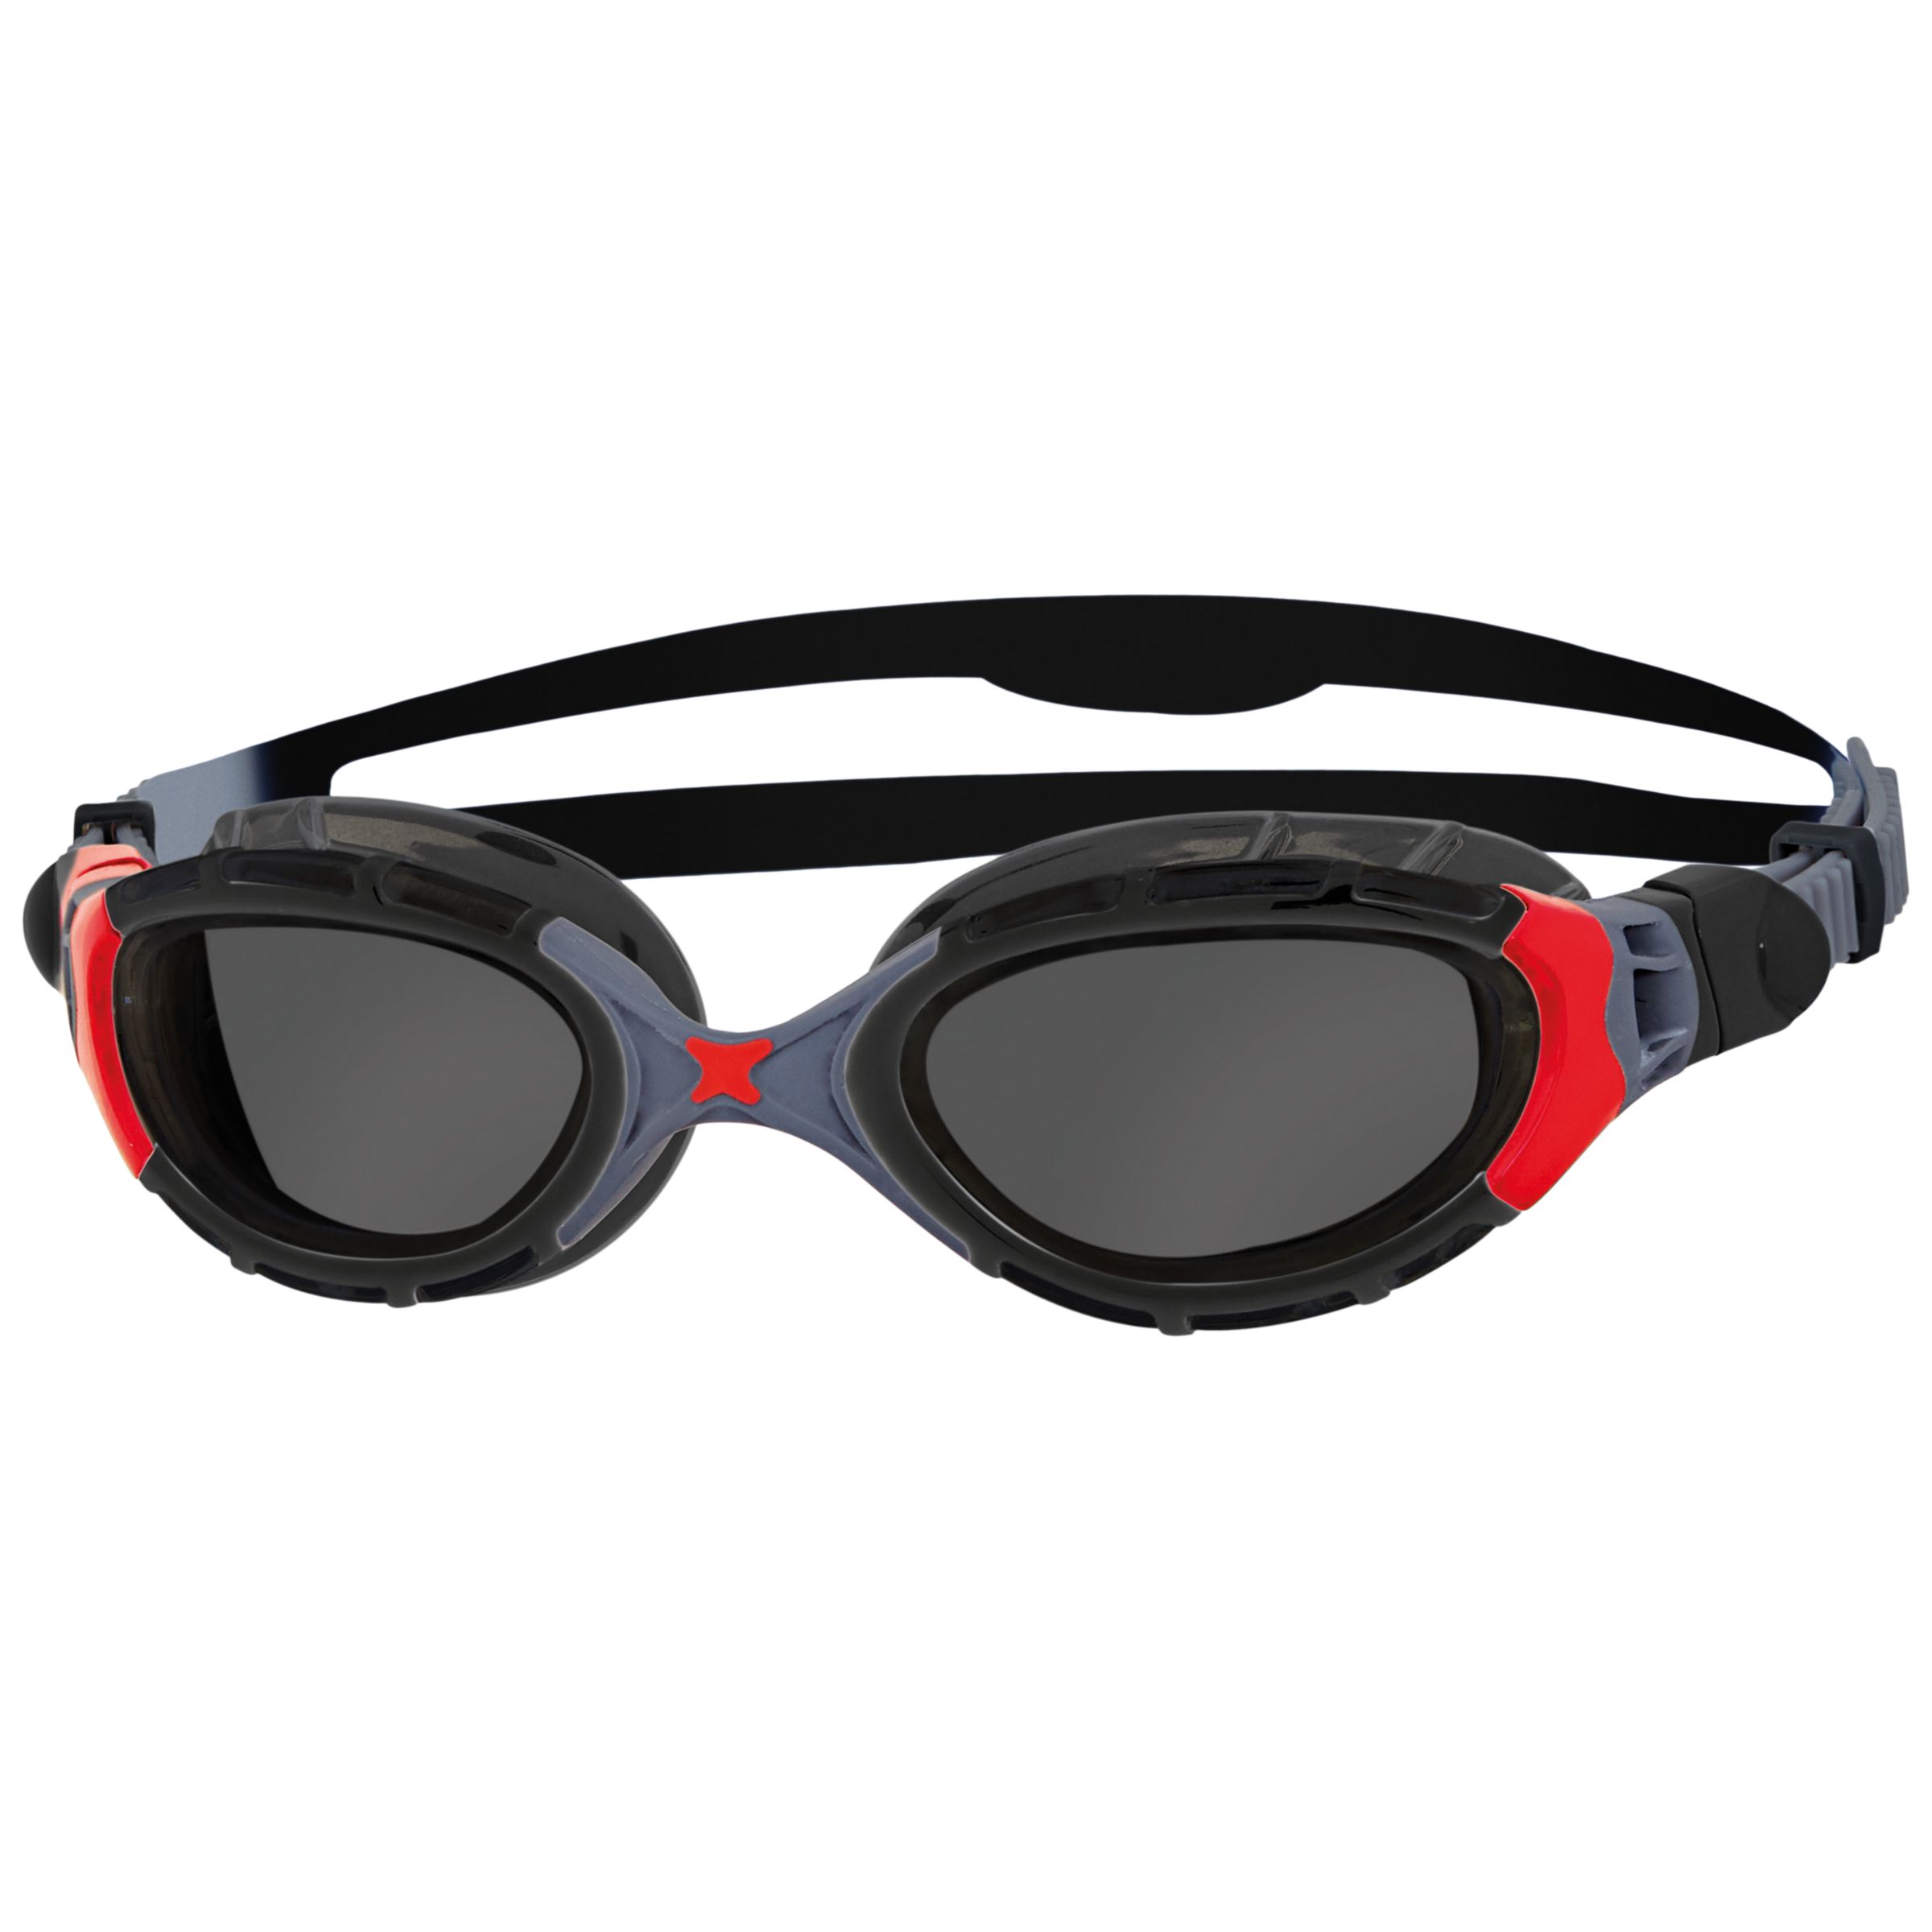 Zoggs Predator Flex Polarized Swimming Goggles, Black/Blue/Copper